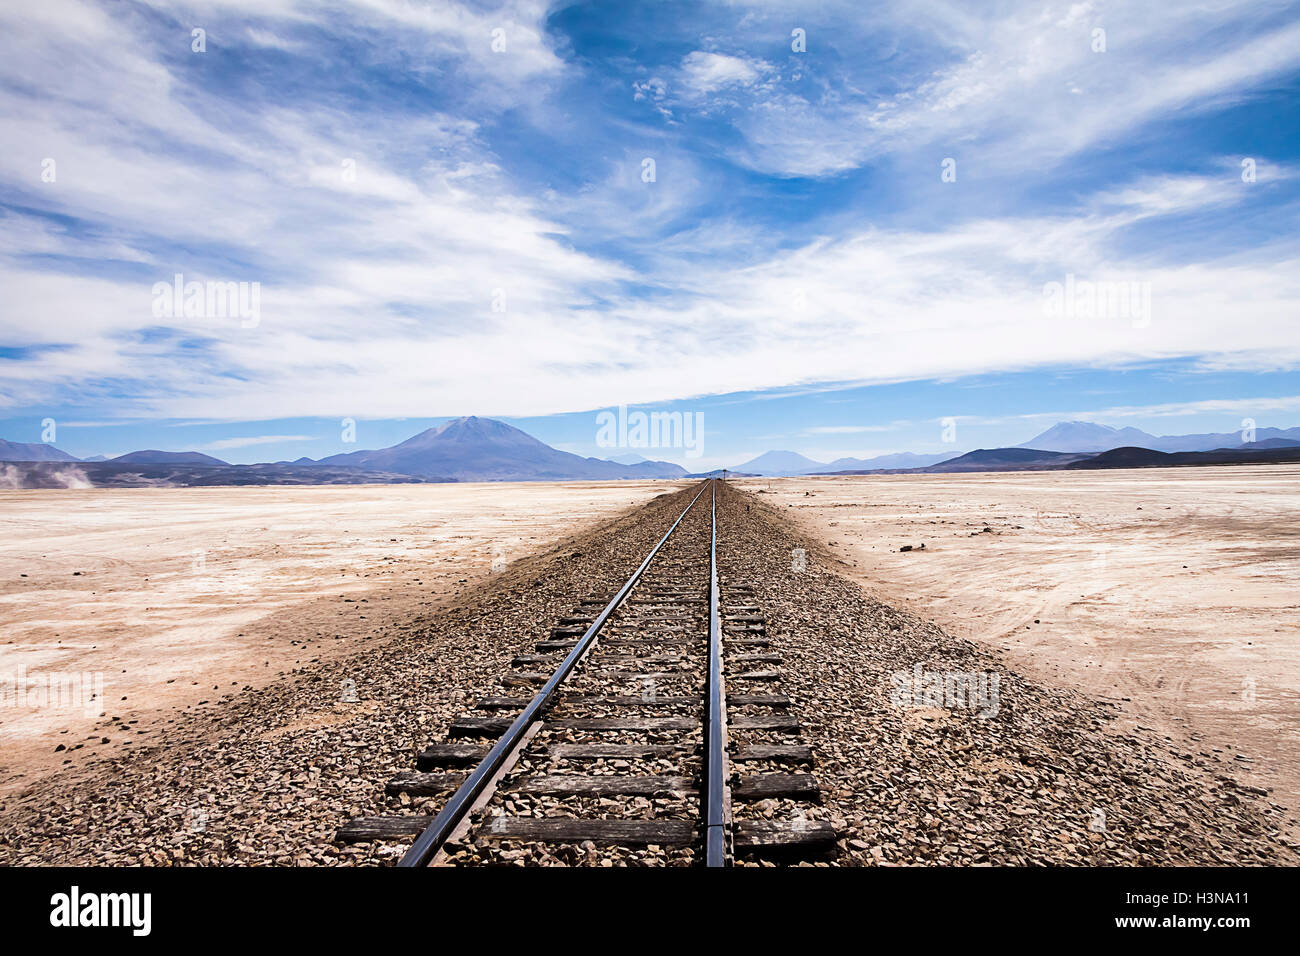 Railway in the desert near Uyuni, Bolivia Stock Photo